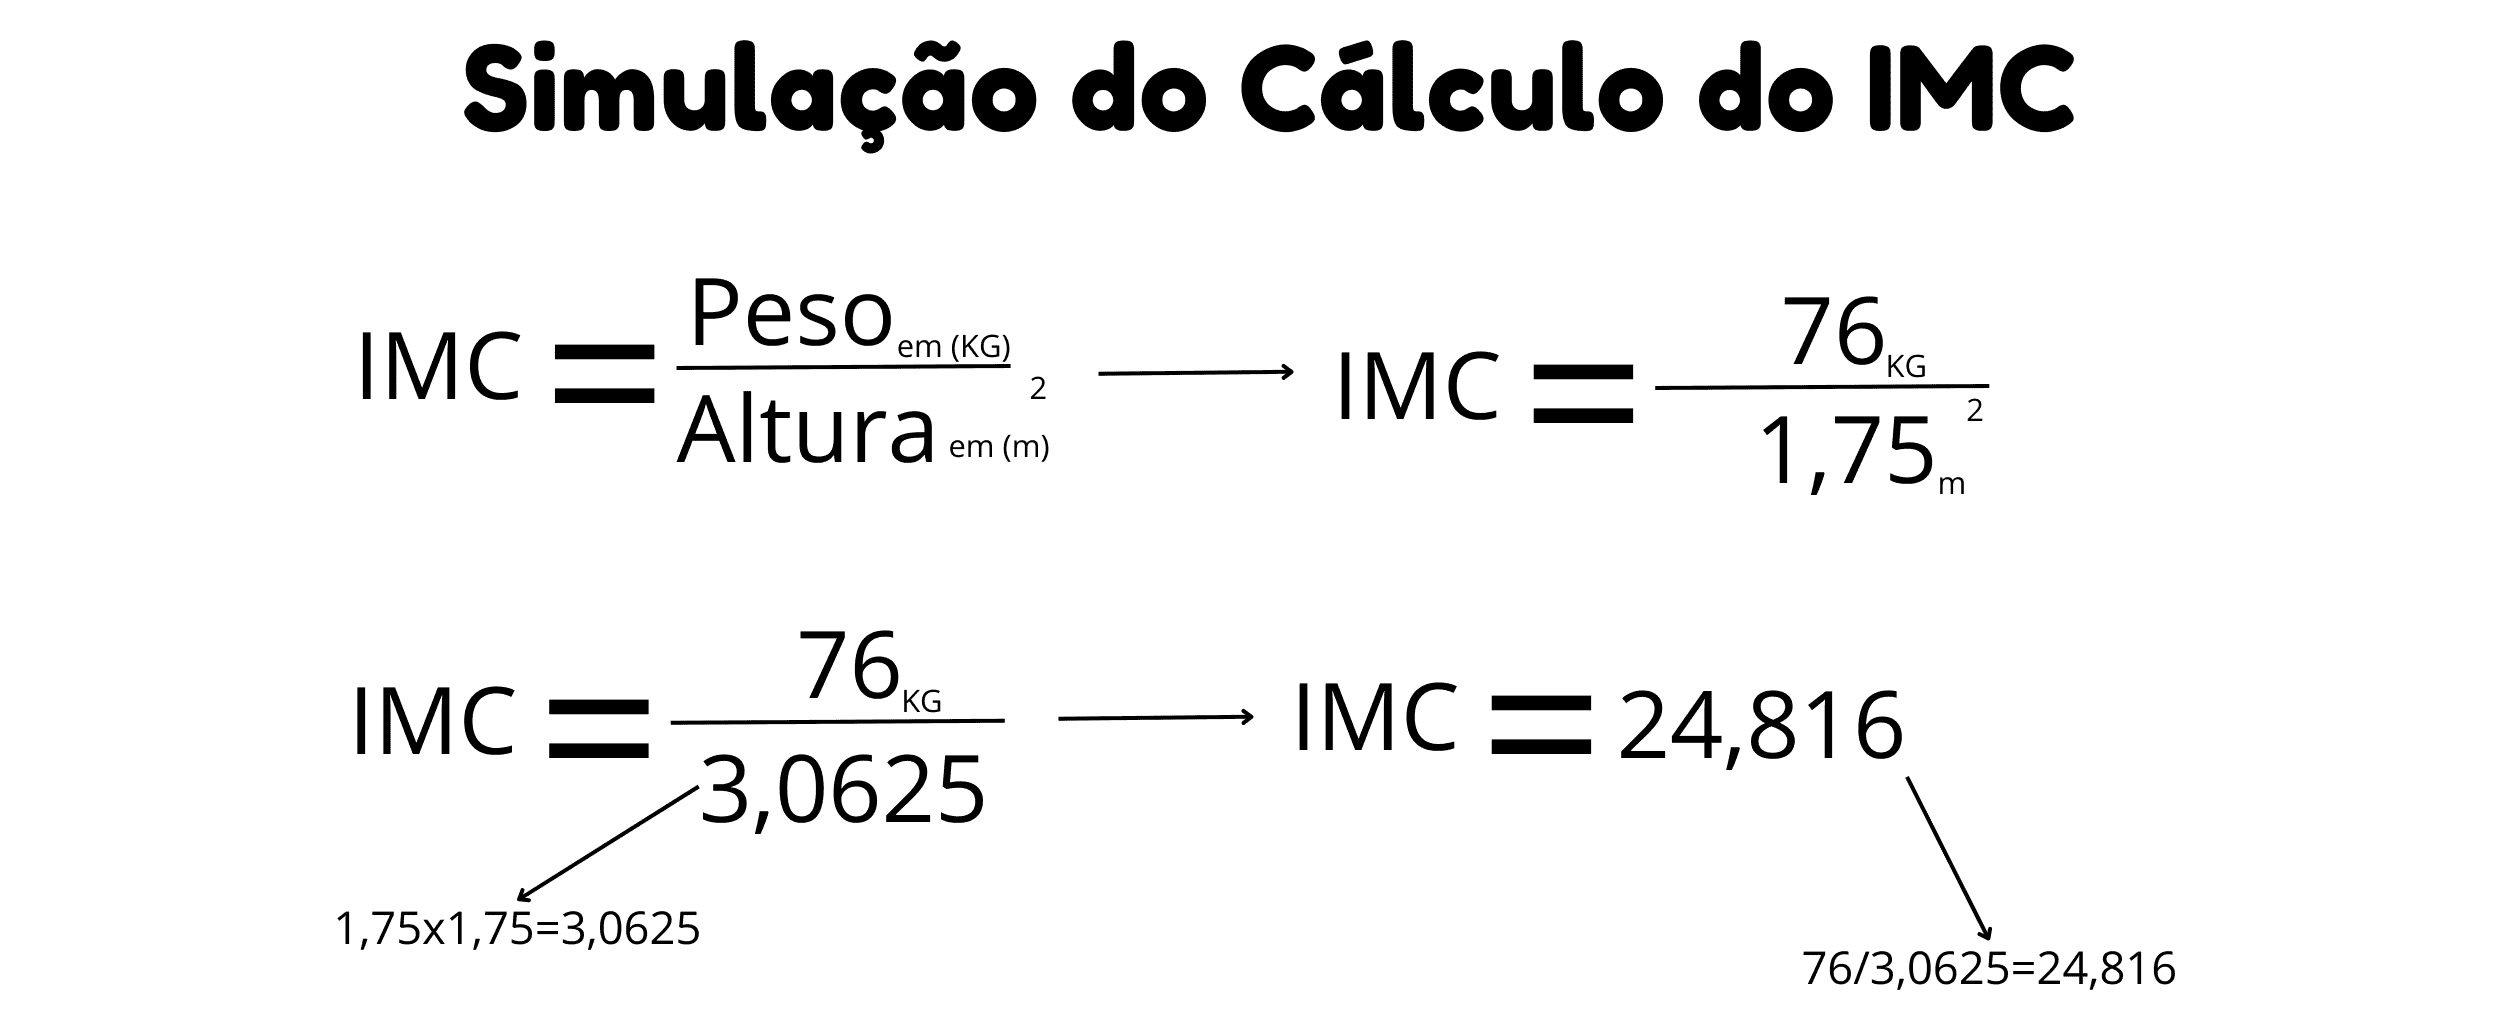 Simulação do cálculo do IMC